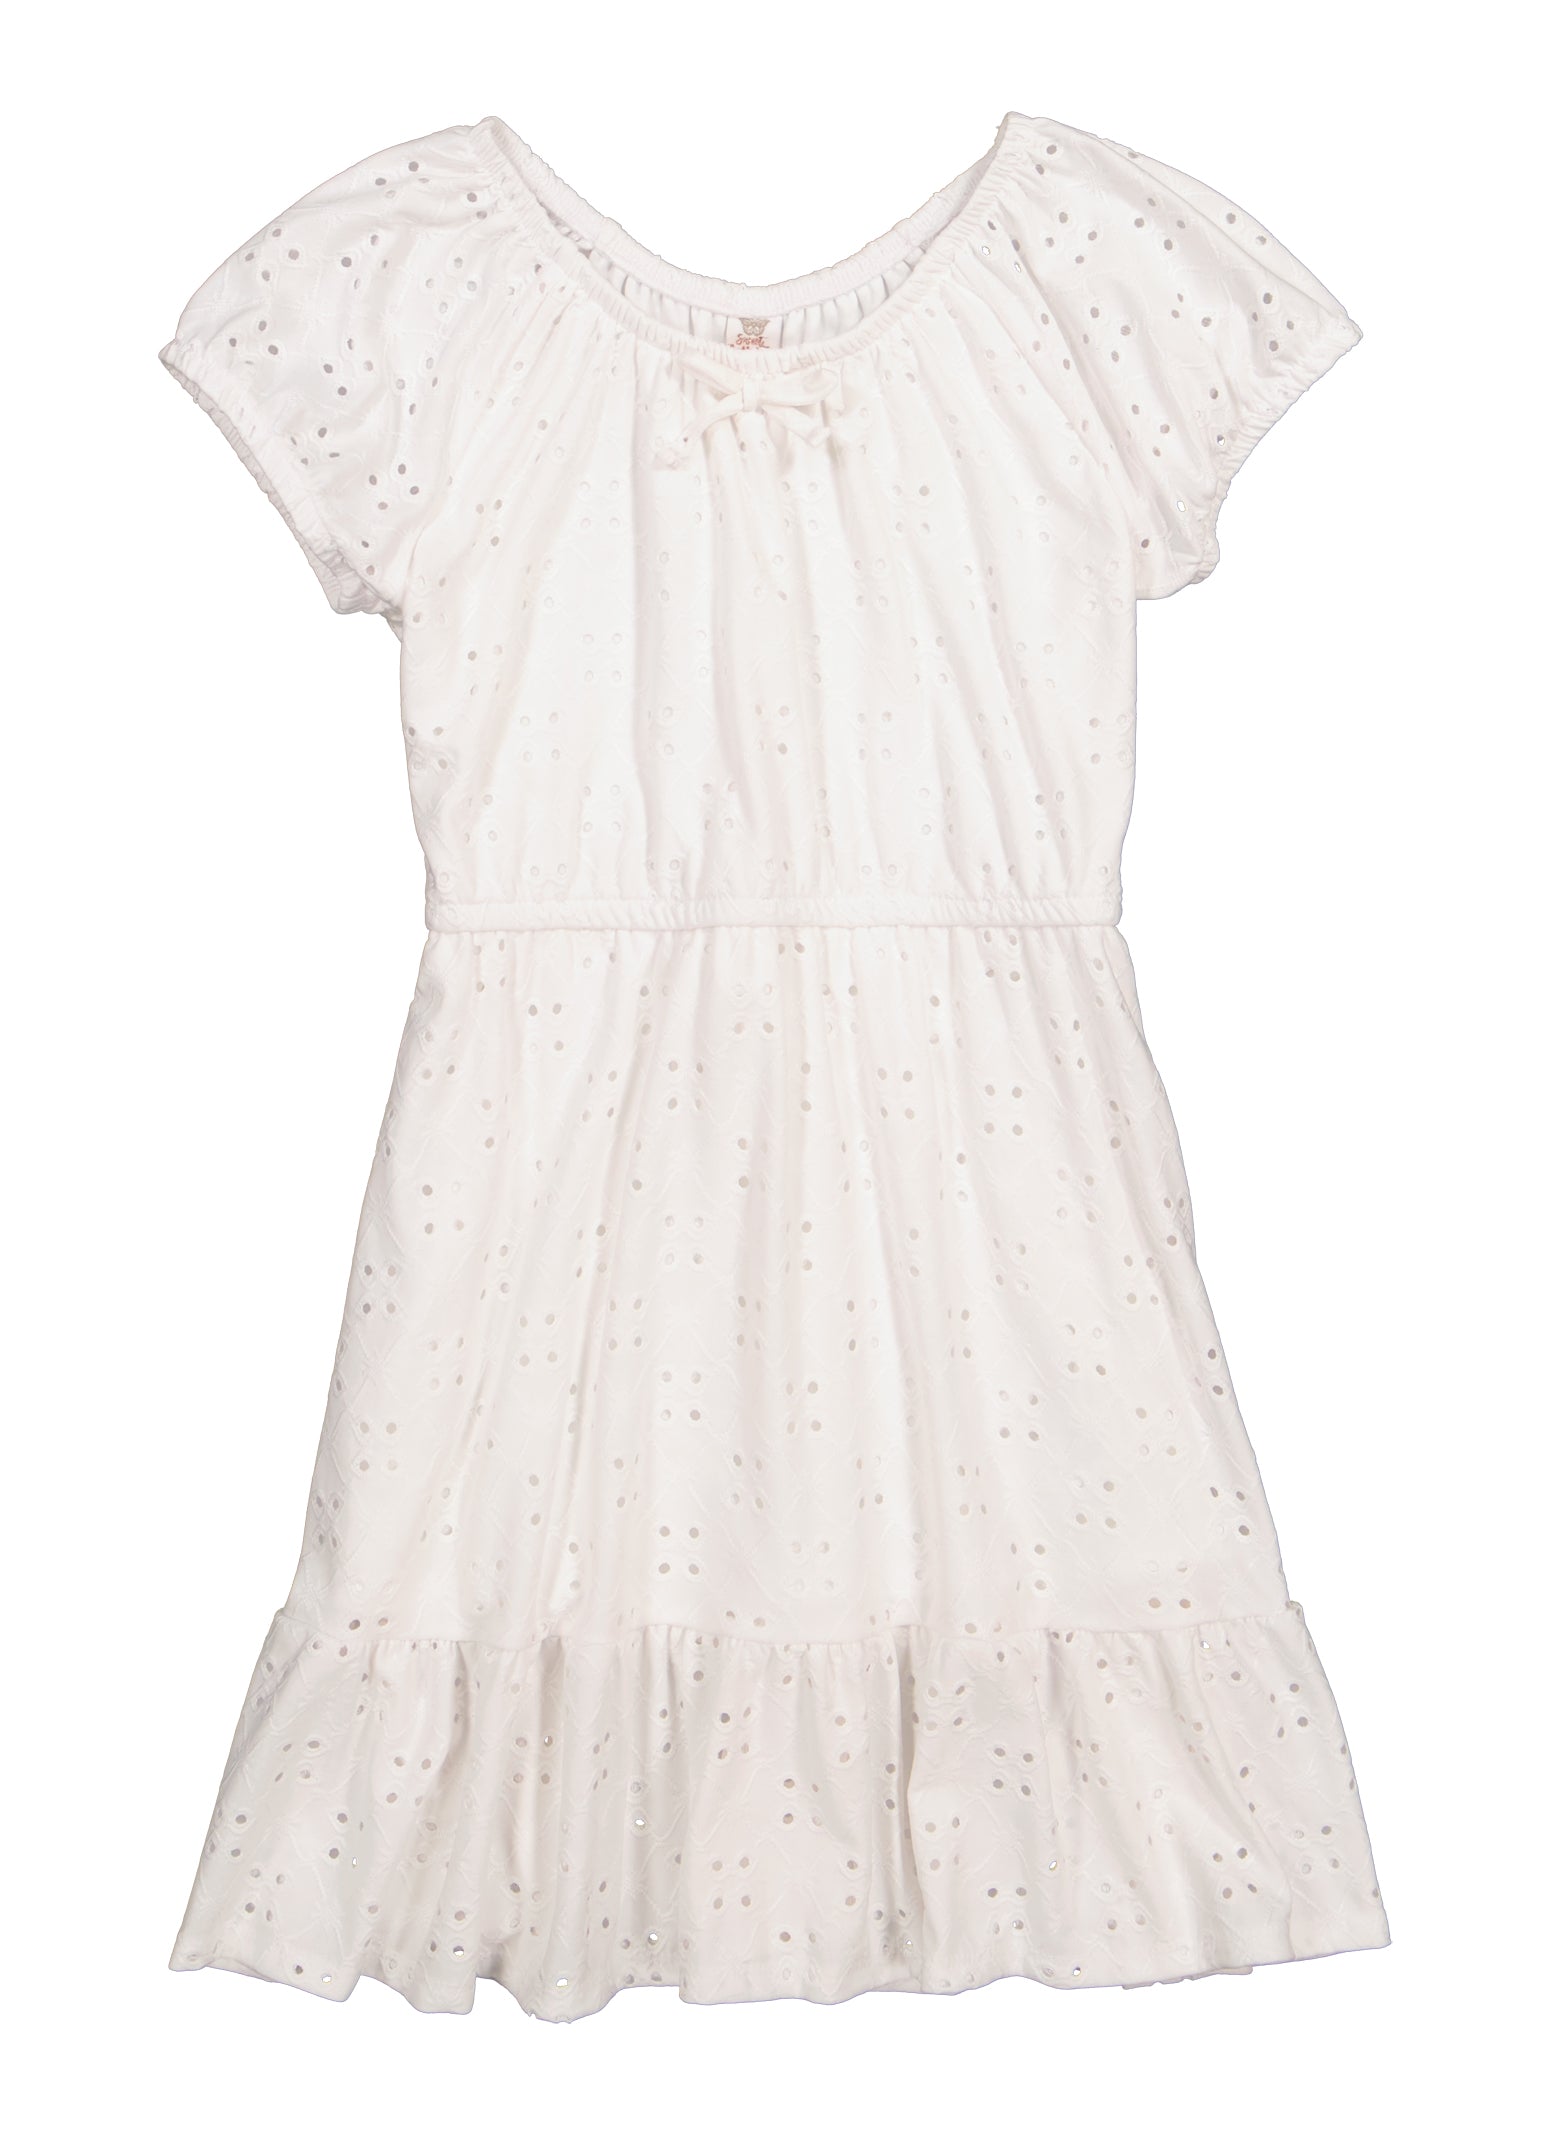 Girls Short Sleeve Eyelet Tiered Dress, White, Size 7-8